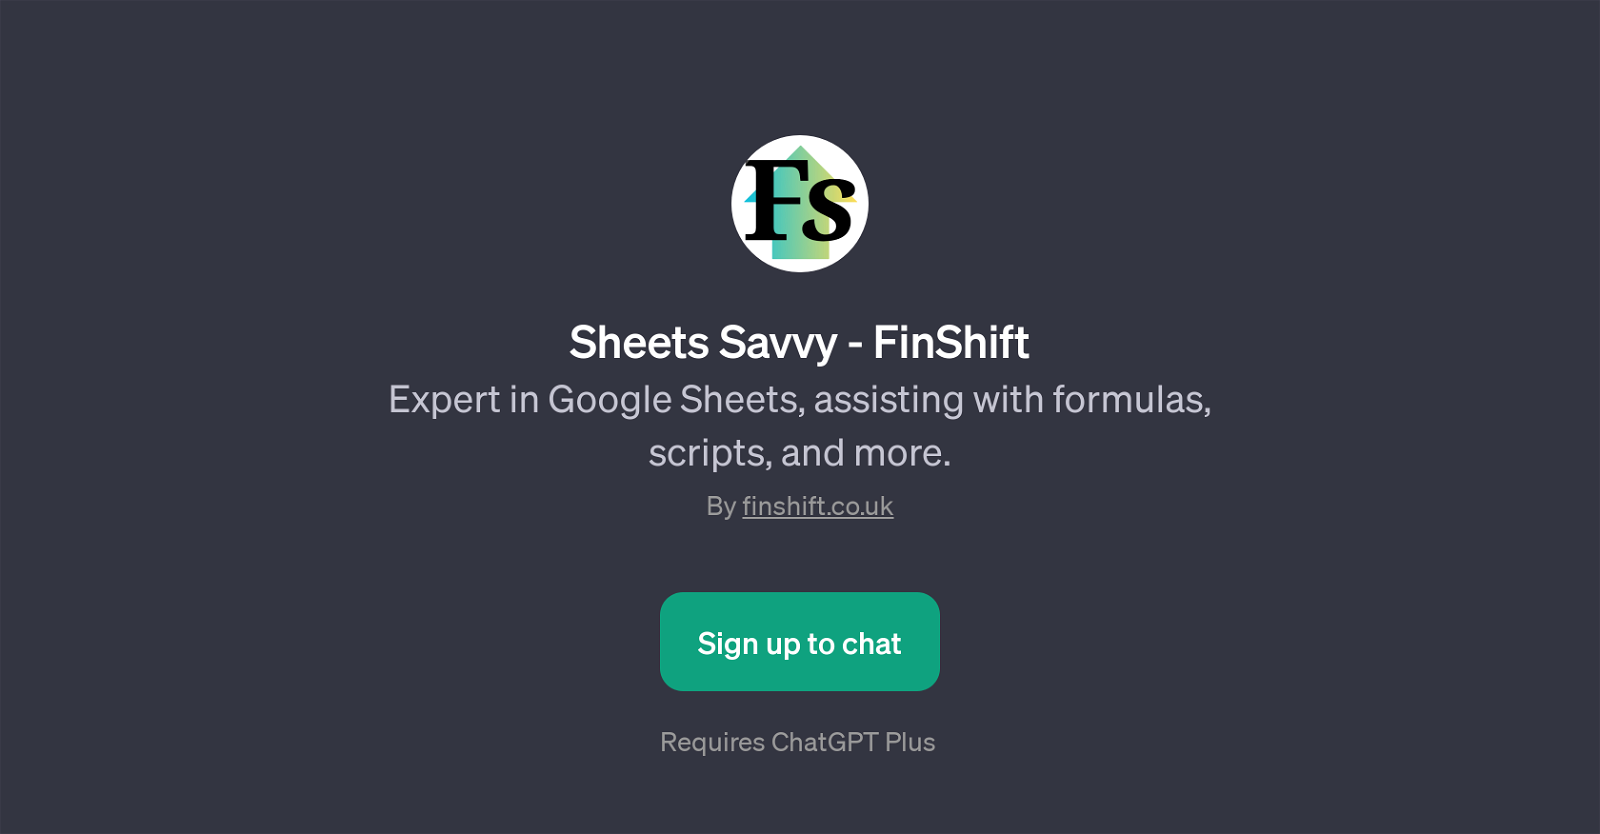 Sheets Savvy - FinShift website